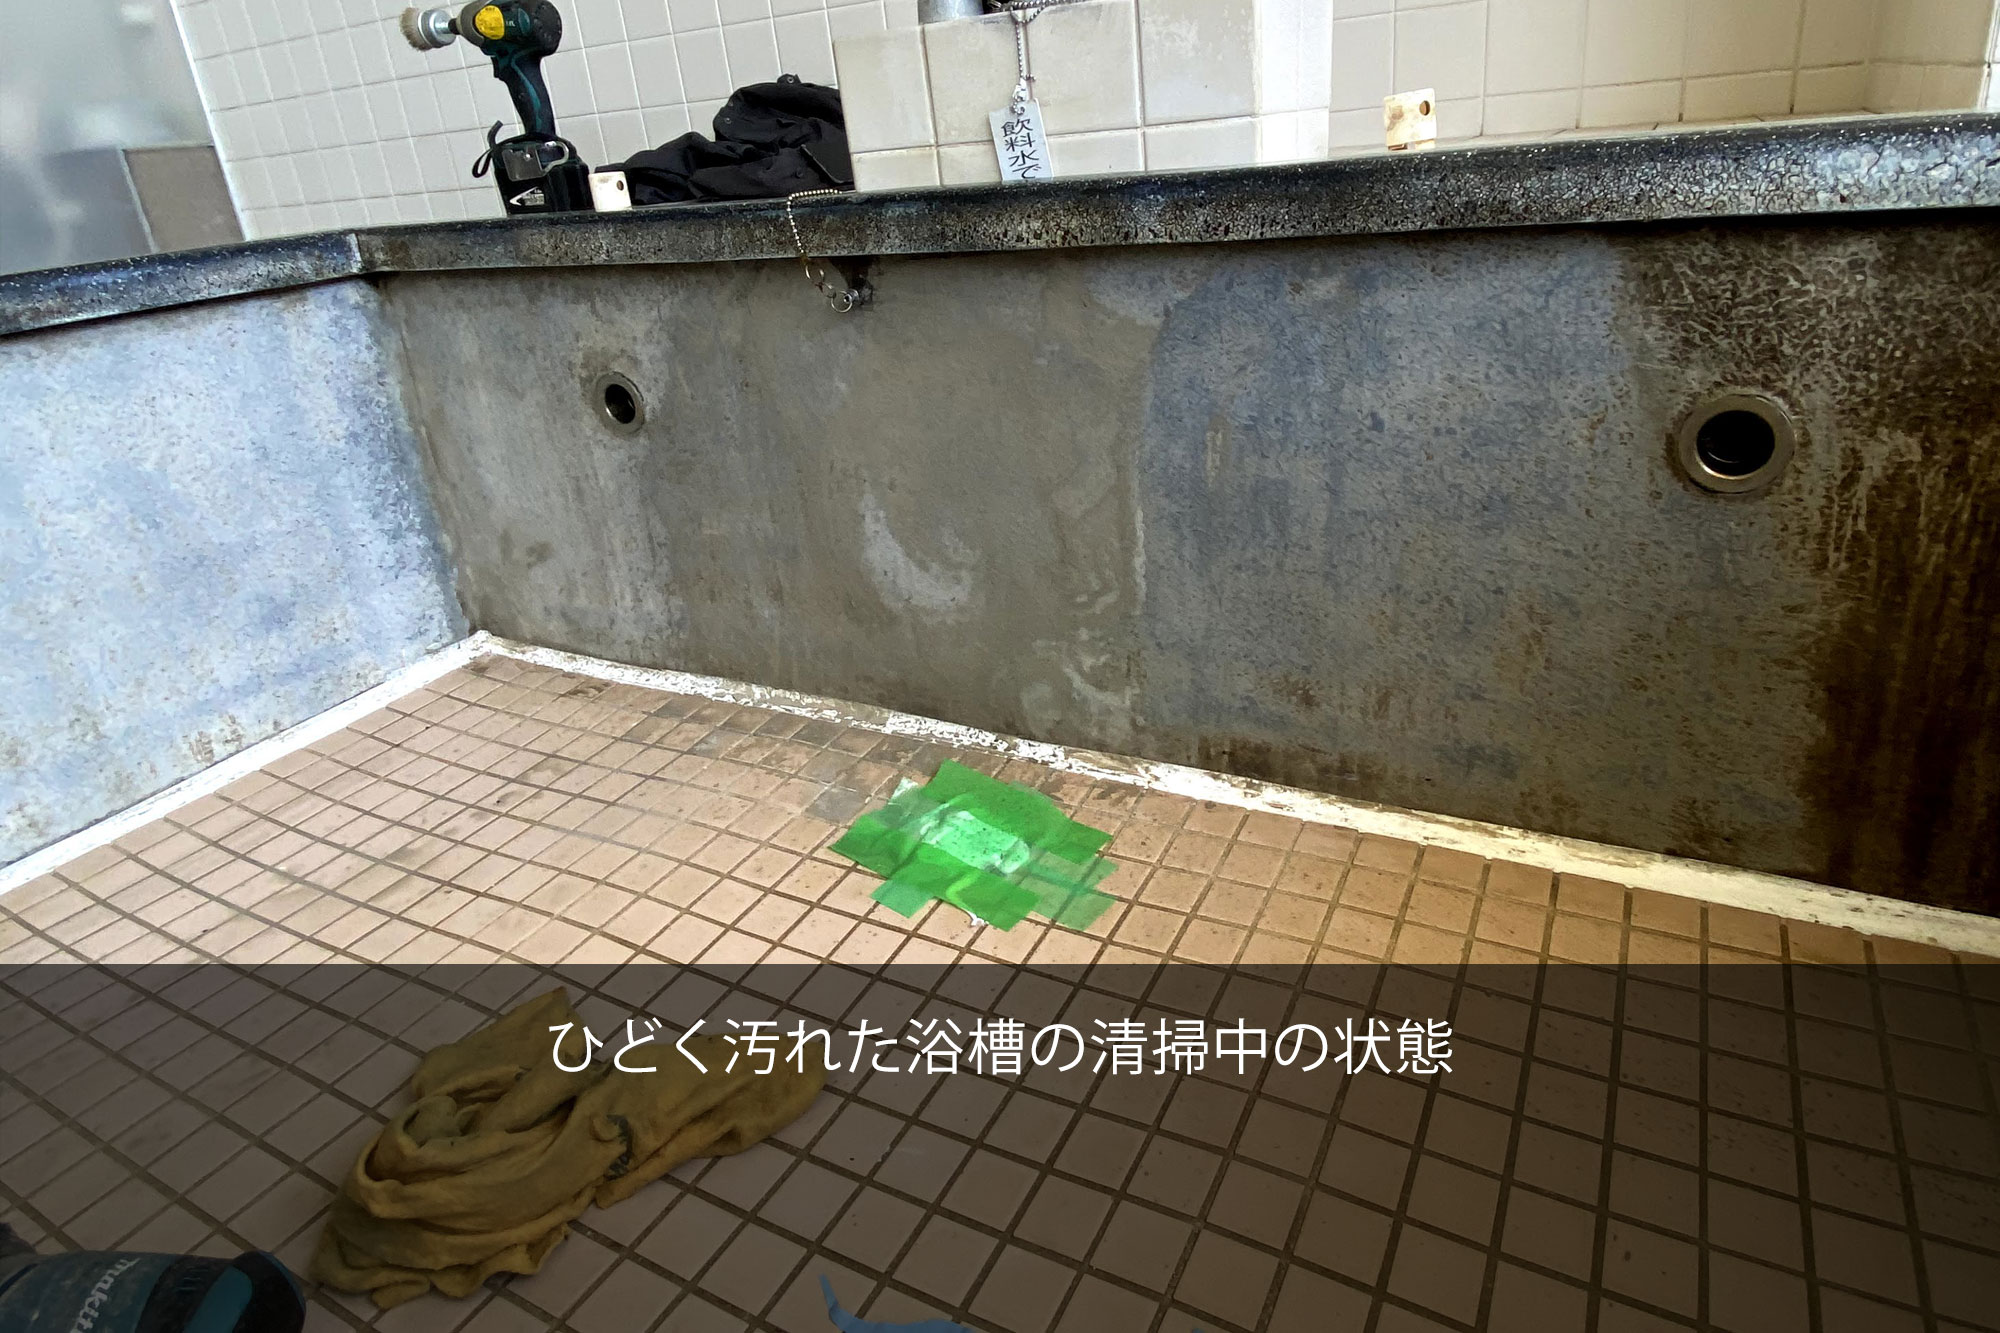 ひどく汚れた浴槽の清掃中の状態